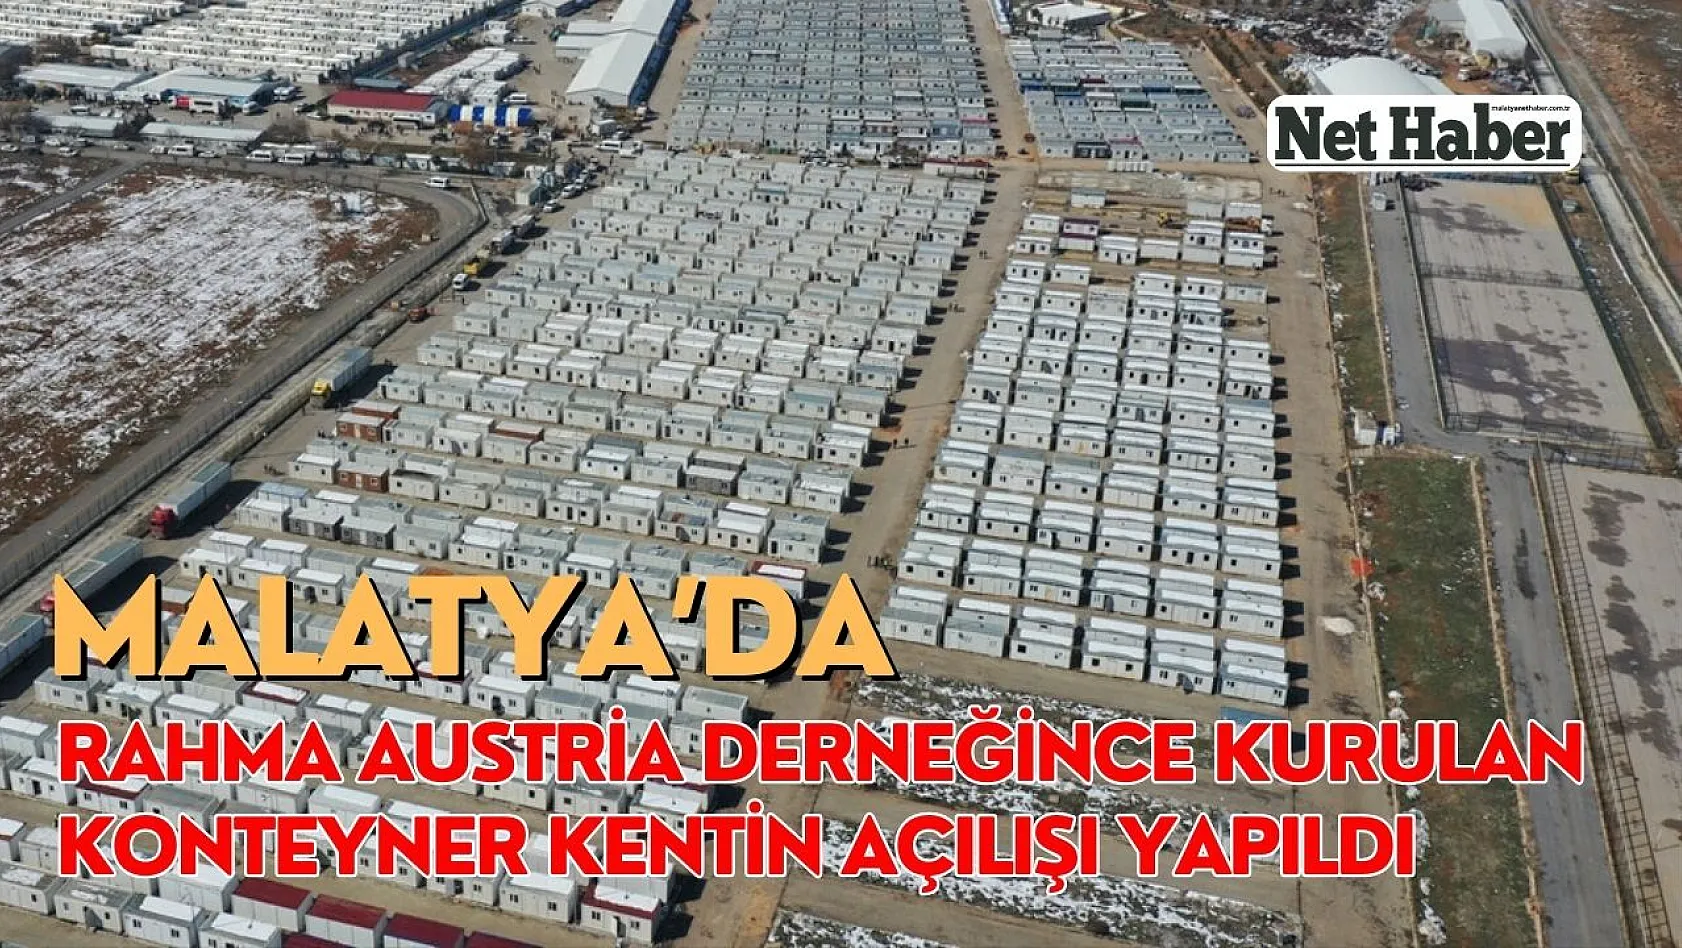 Malatya'da Rahma Austria konteyner kentin açılışı yapıldı